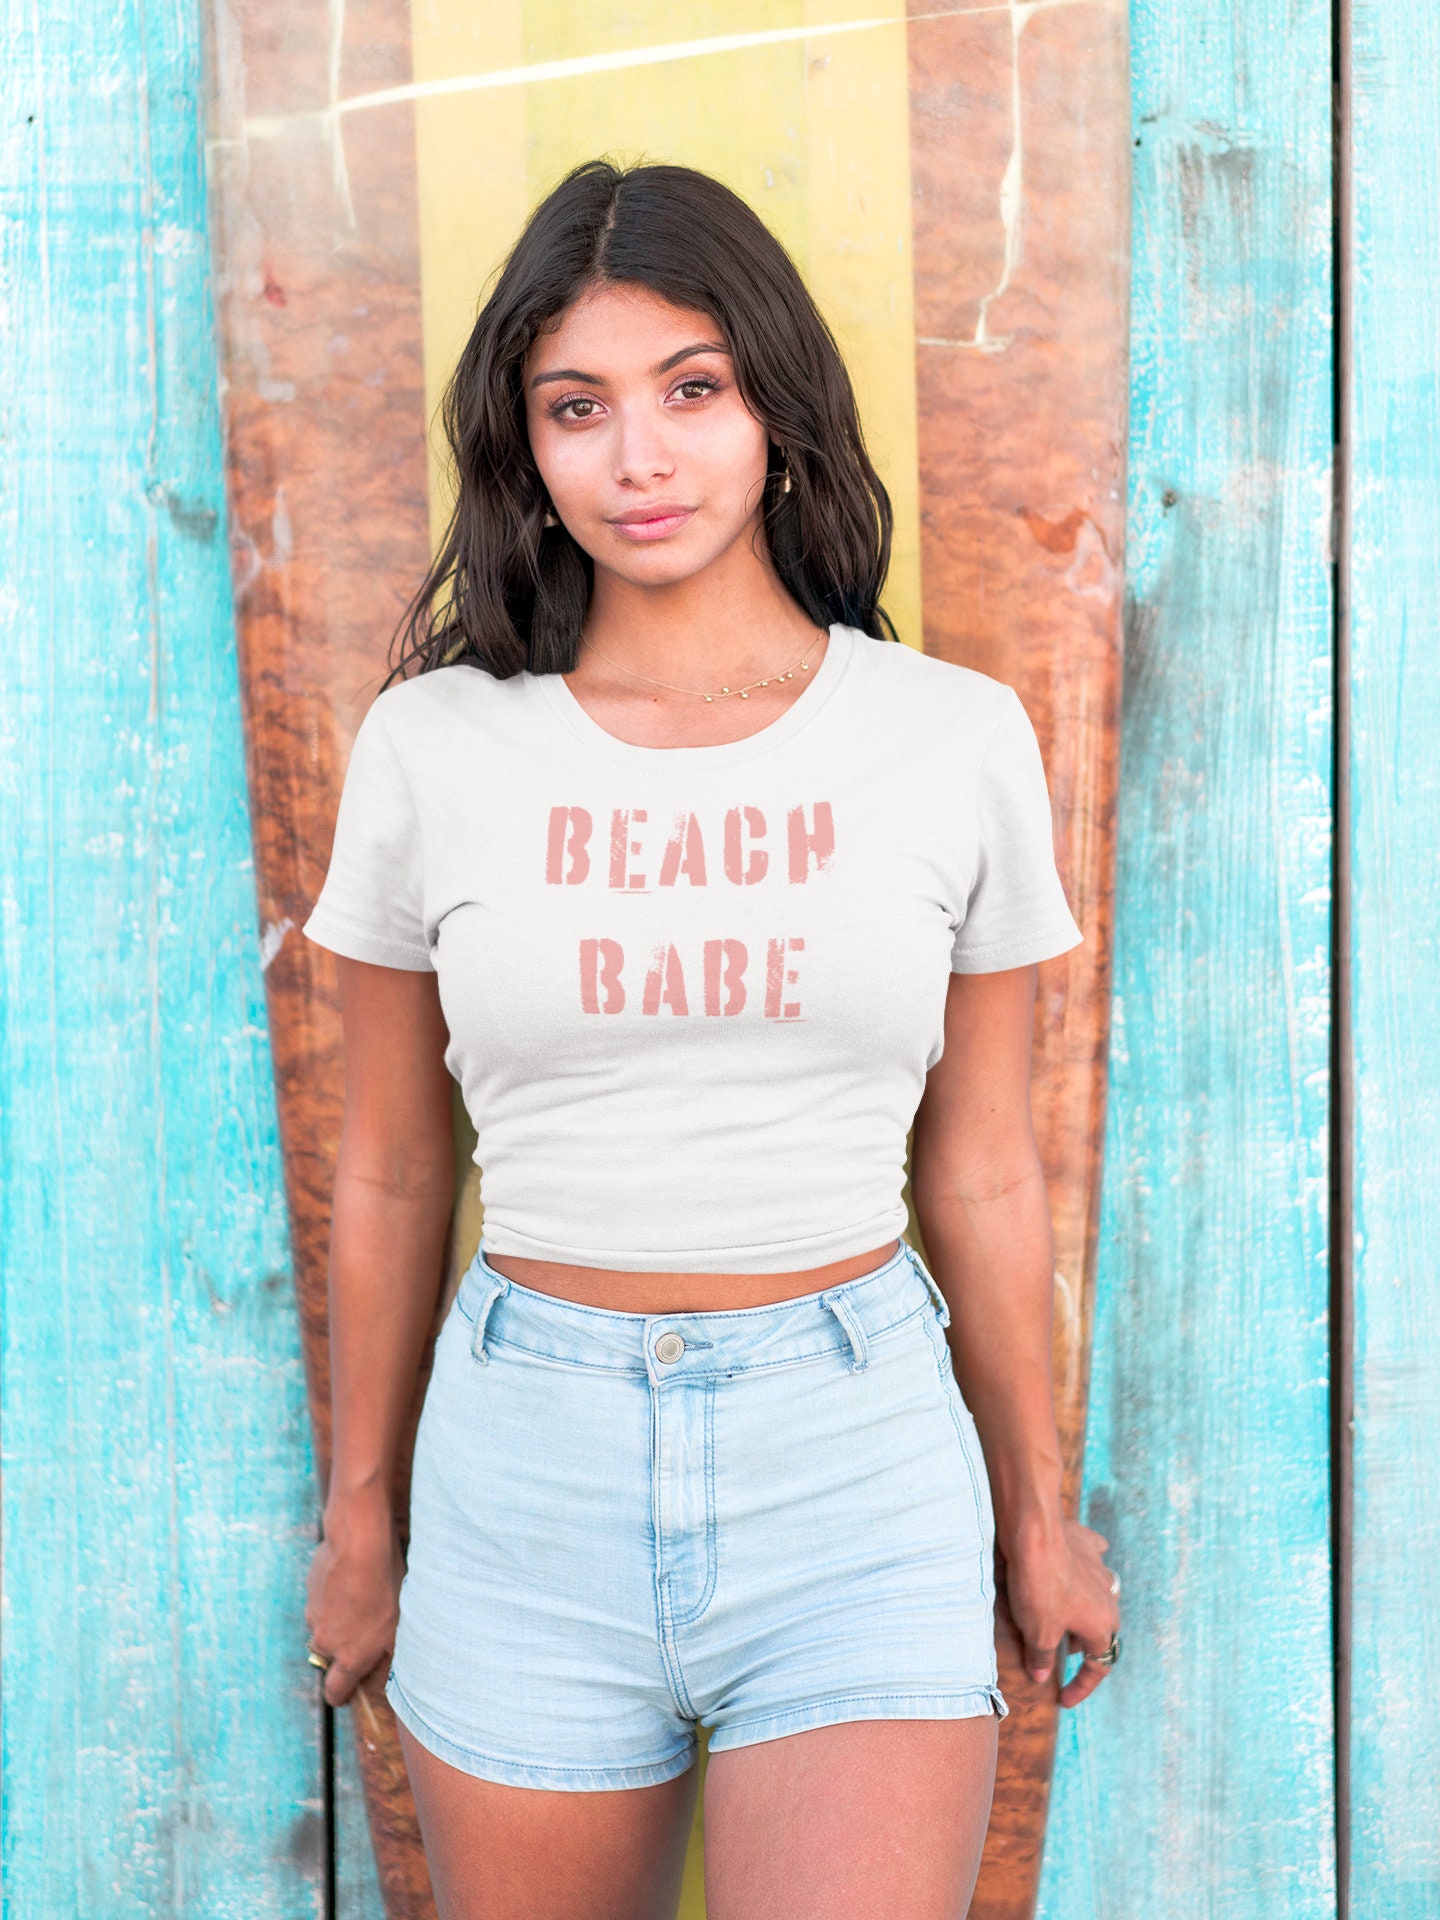 Beach Babe Shirt Black